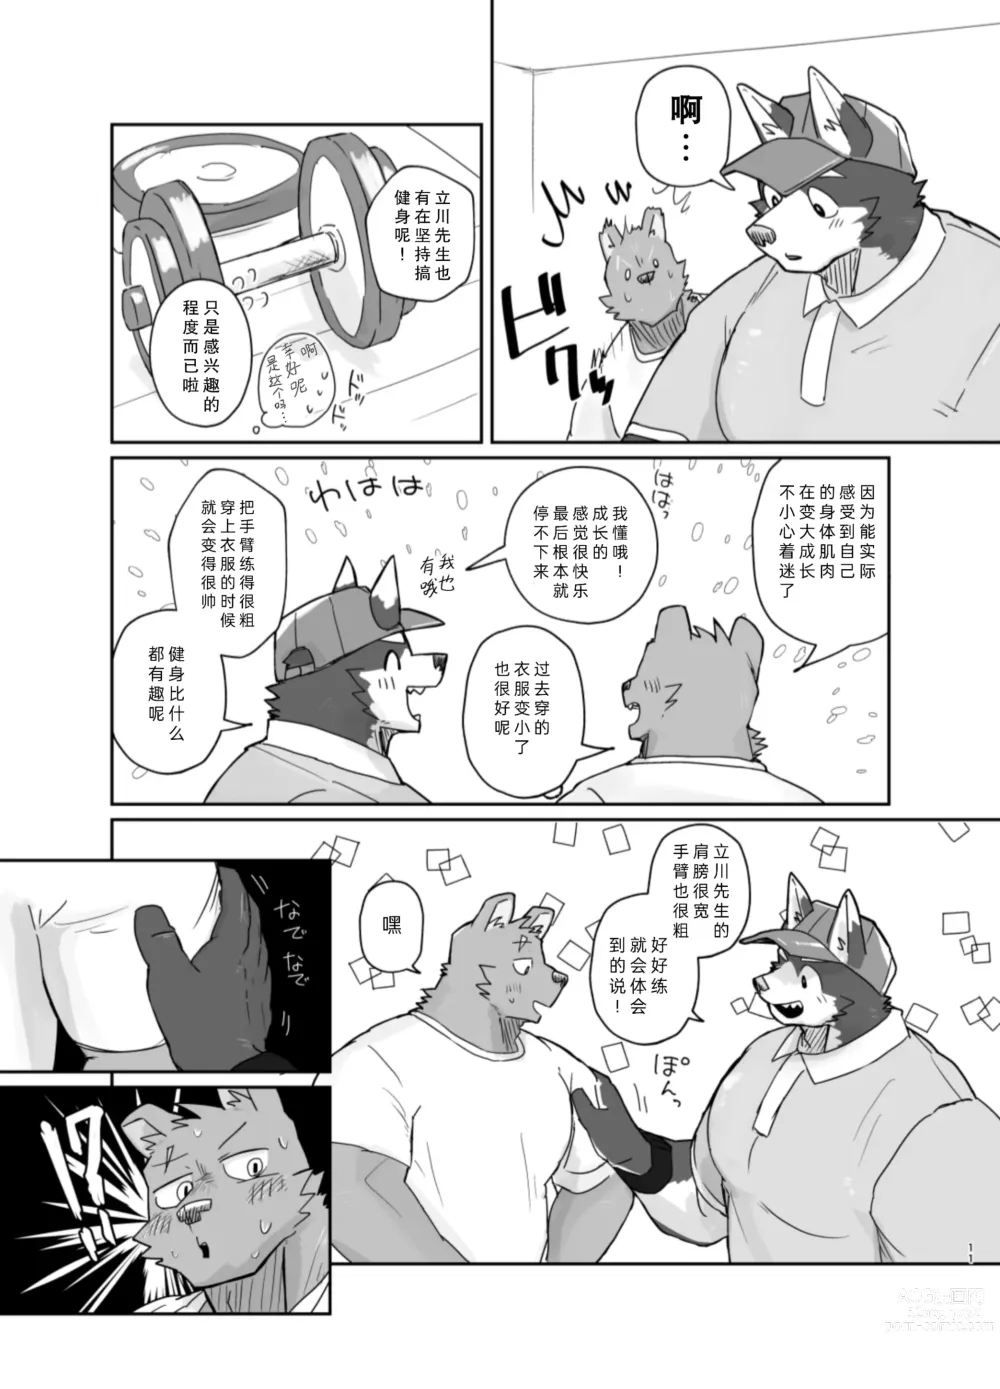 Page 11 of doujinshi 搬家的十分钟服务